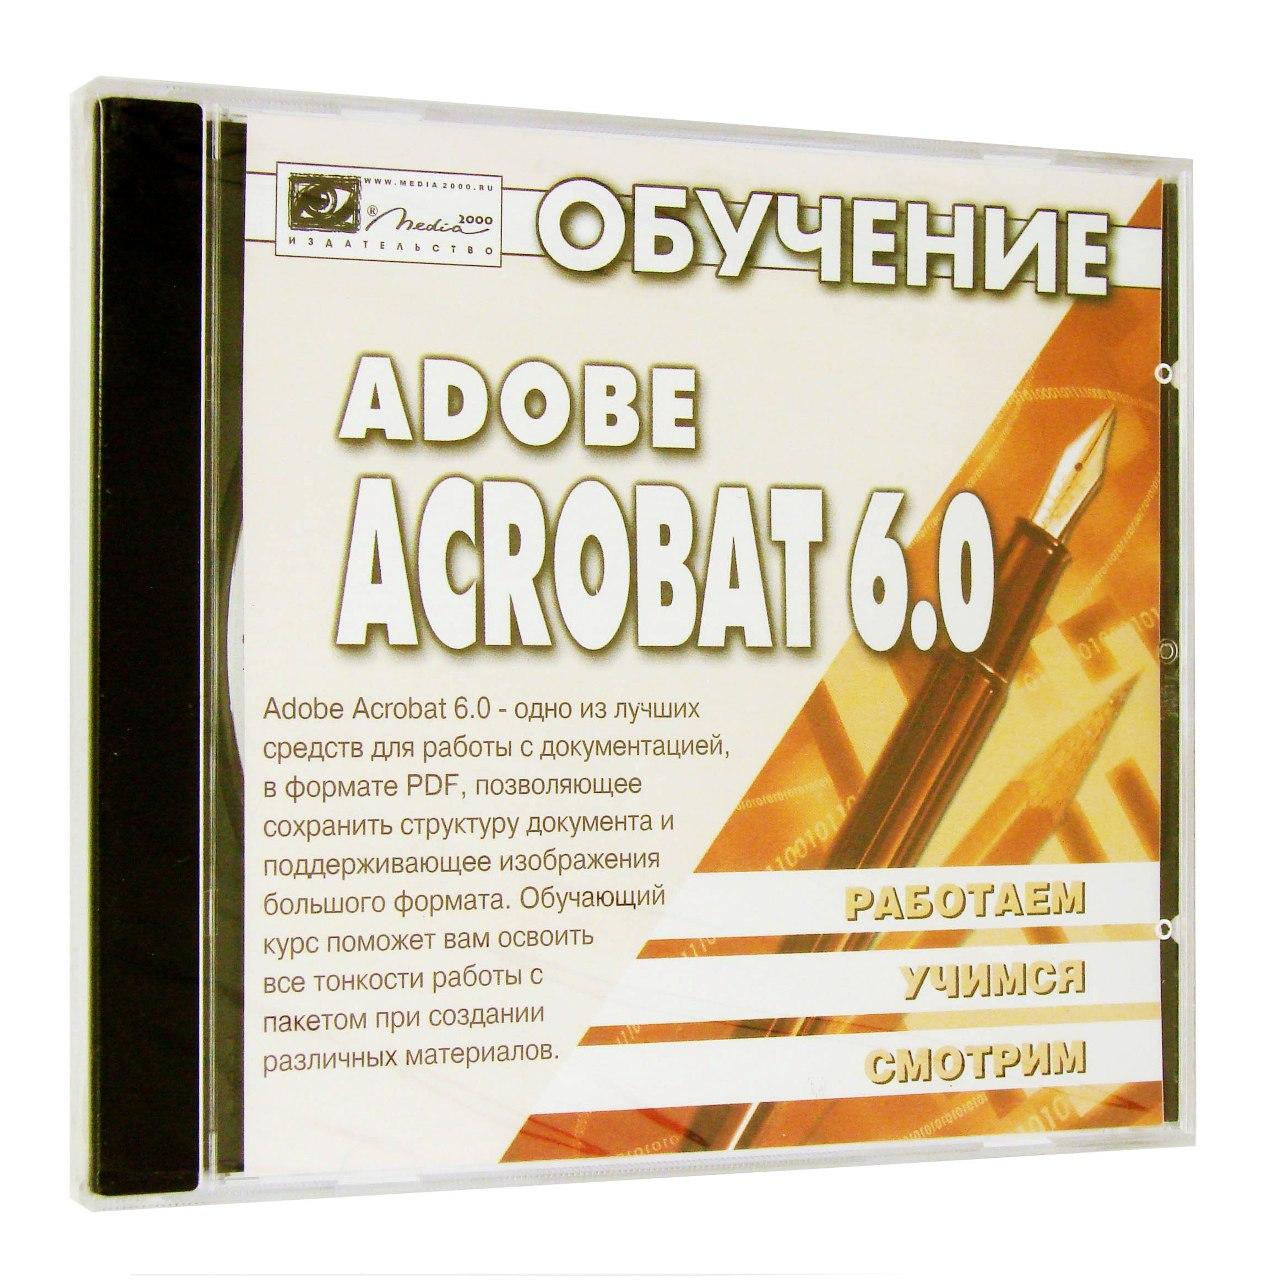 Компьютерный компакт-диск Обучение Adobe ACROBAT 6 (PC), фирма "Медиа 2000", 1CD